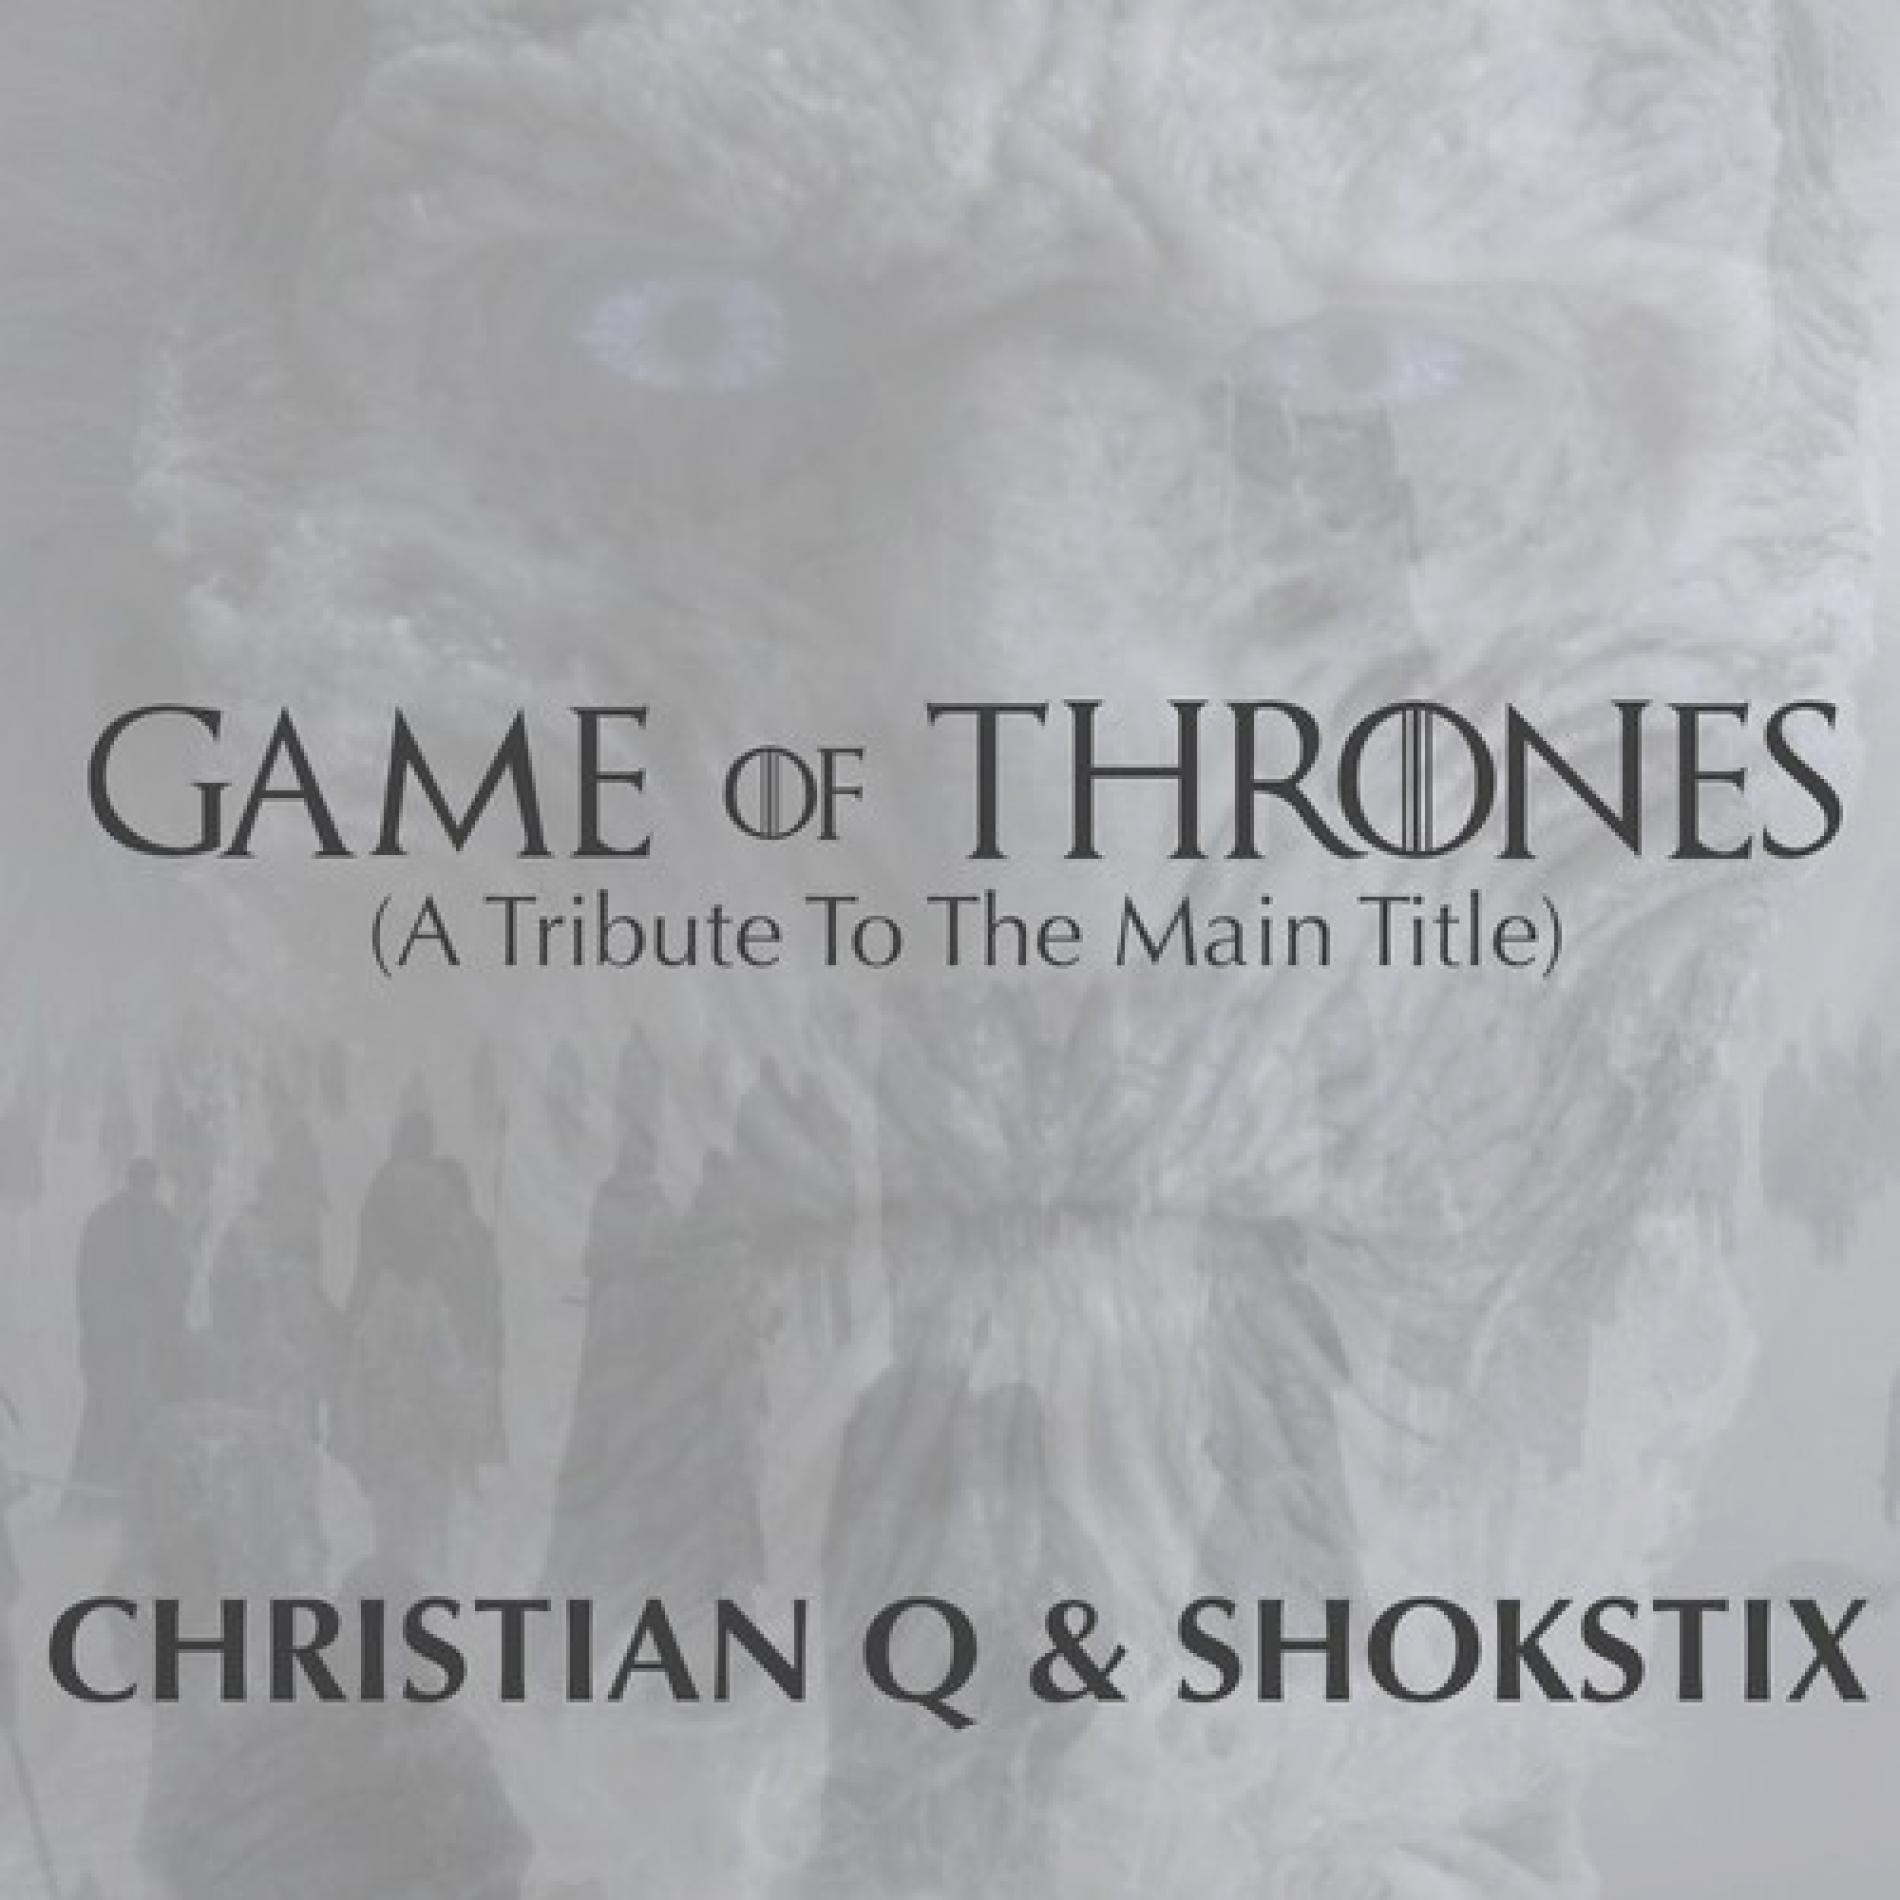 Christian Q & Shokstix – Game of Thrones (A Tribute)